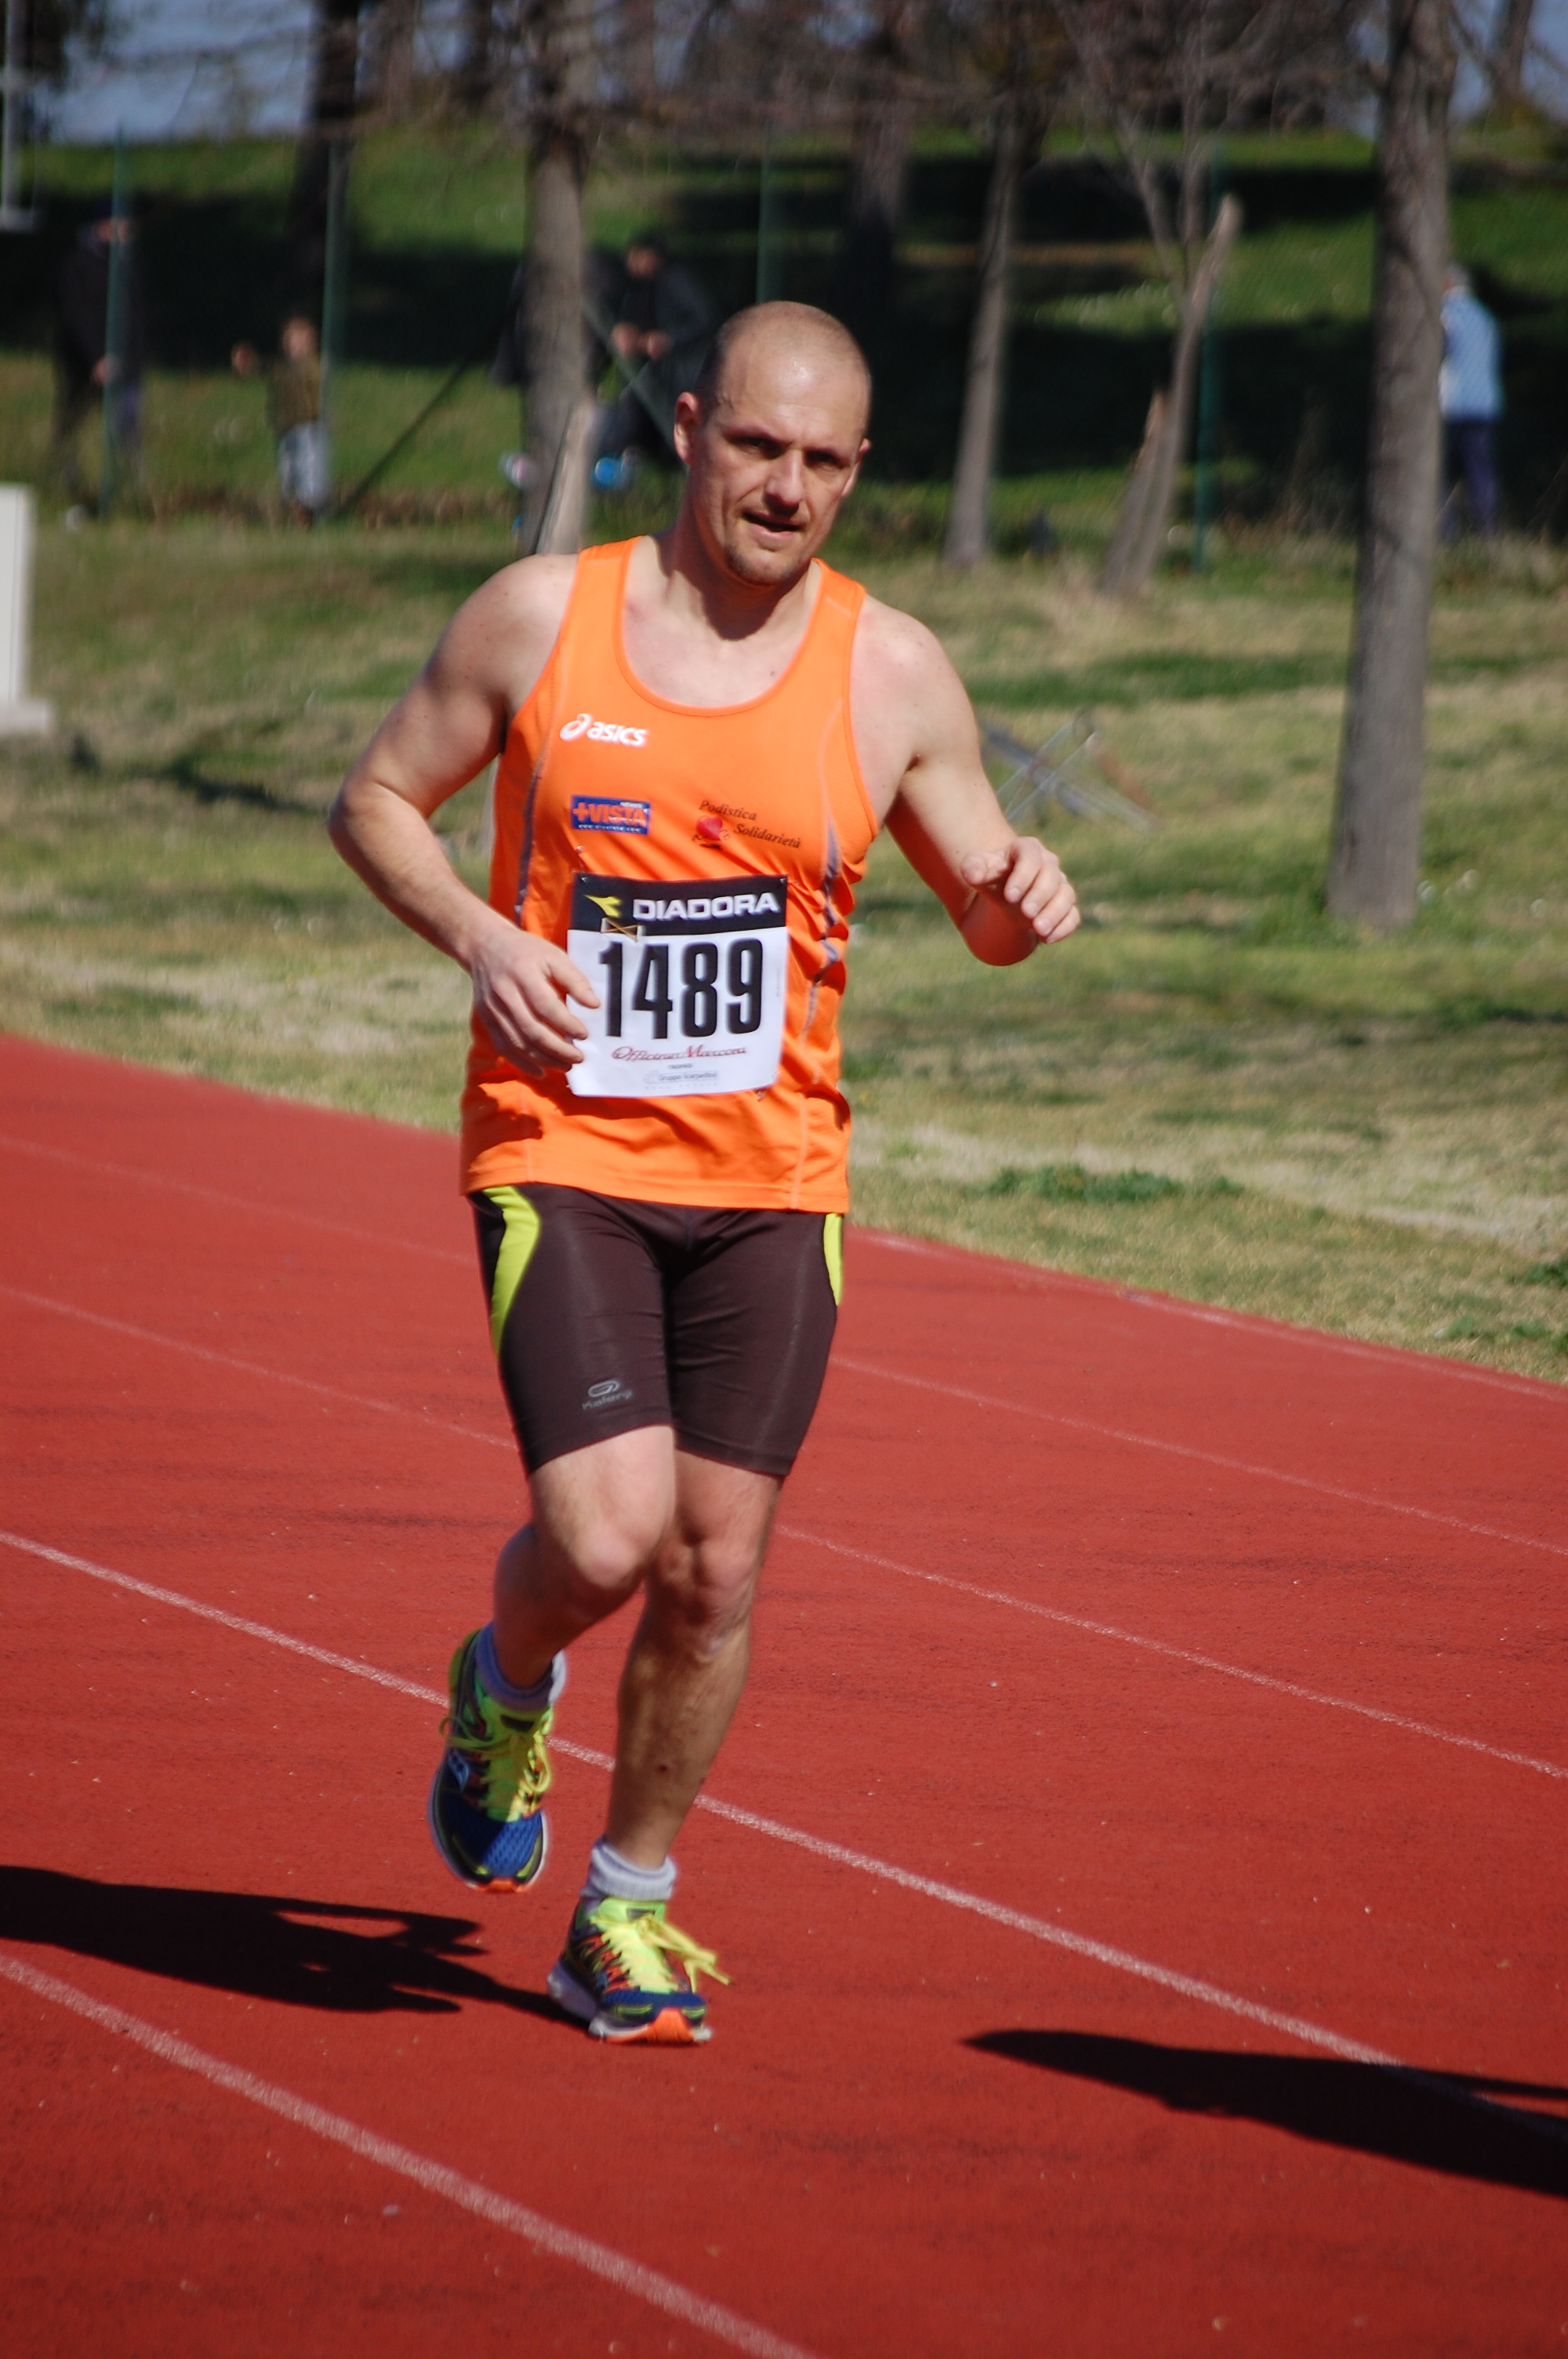 Corri per il Parco Alessandrino (08/03/2015) 00130